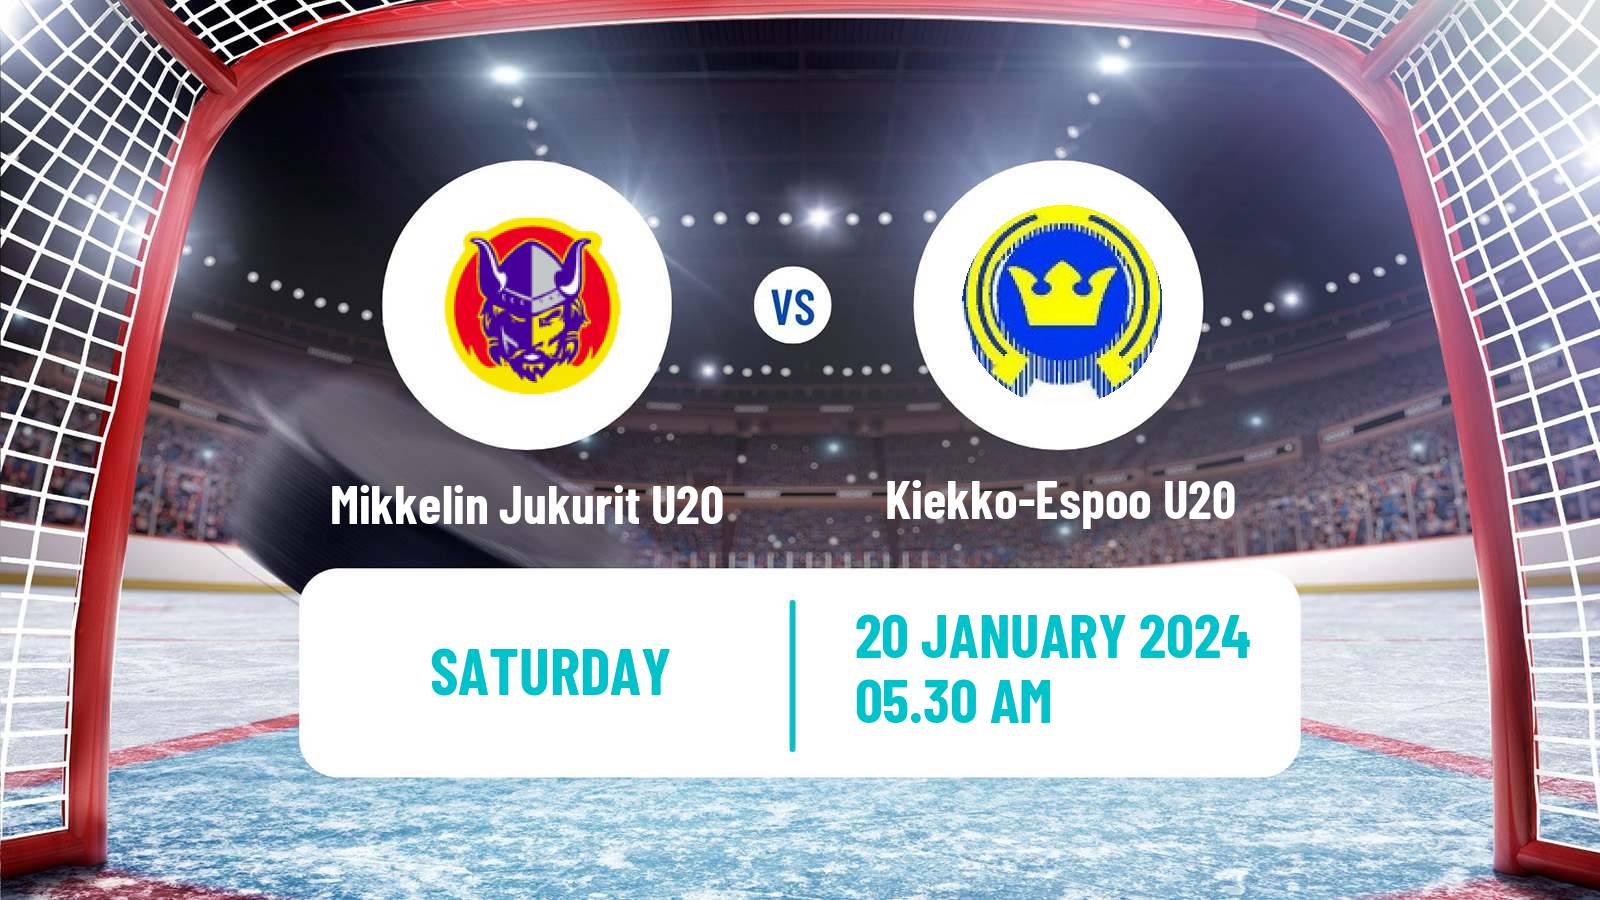 Hockey Finnish SM-sarja U20 Mikkelin Jukurit U20 - Kiekko-Espoo U20